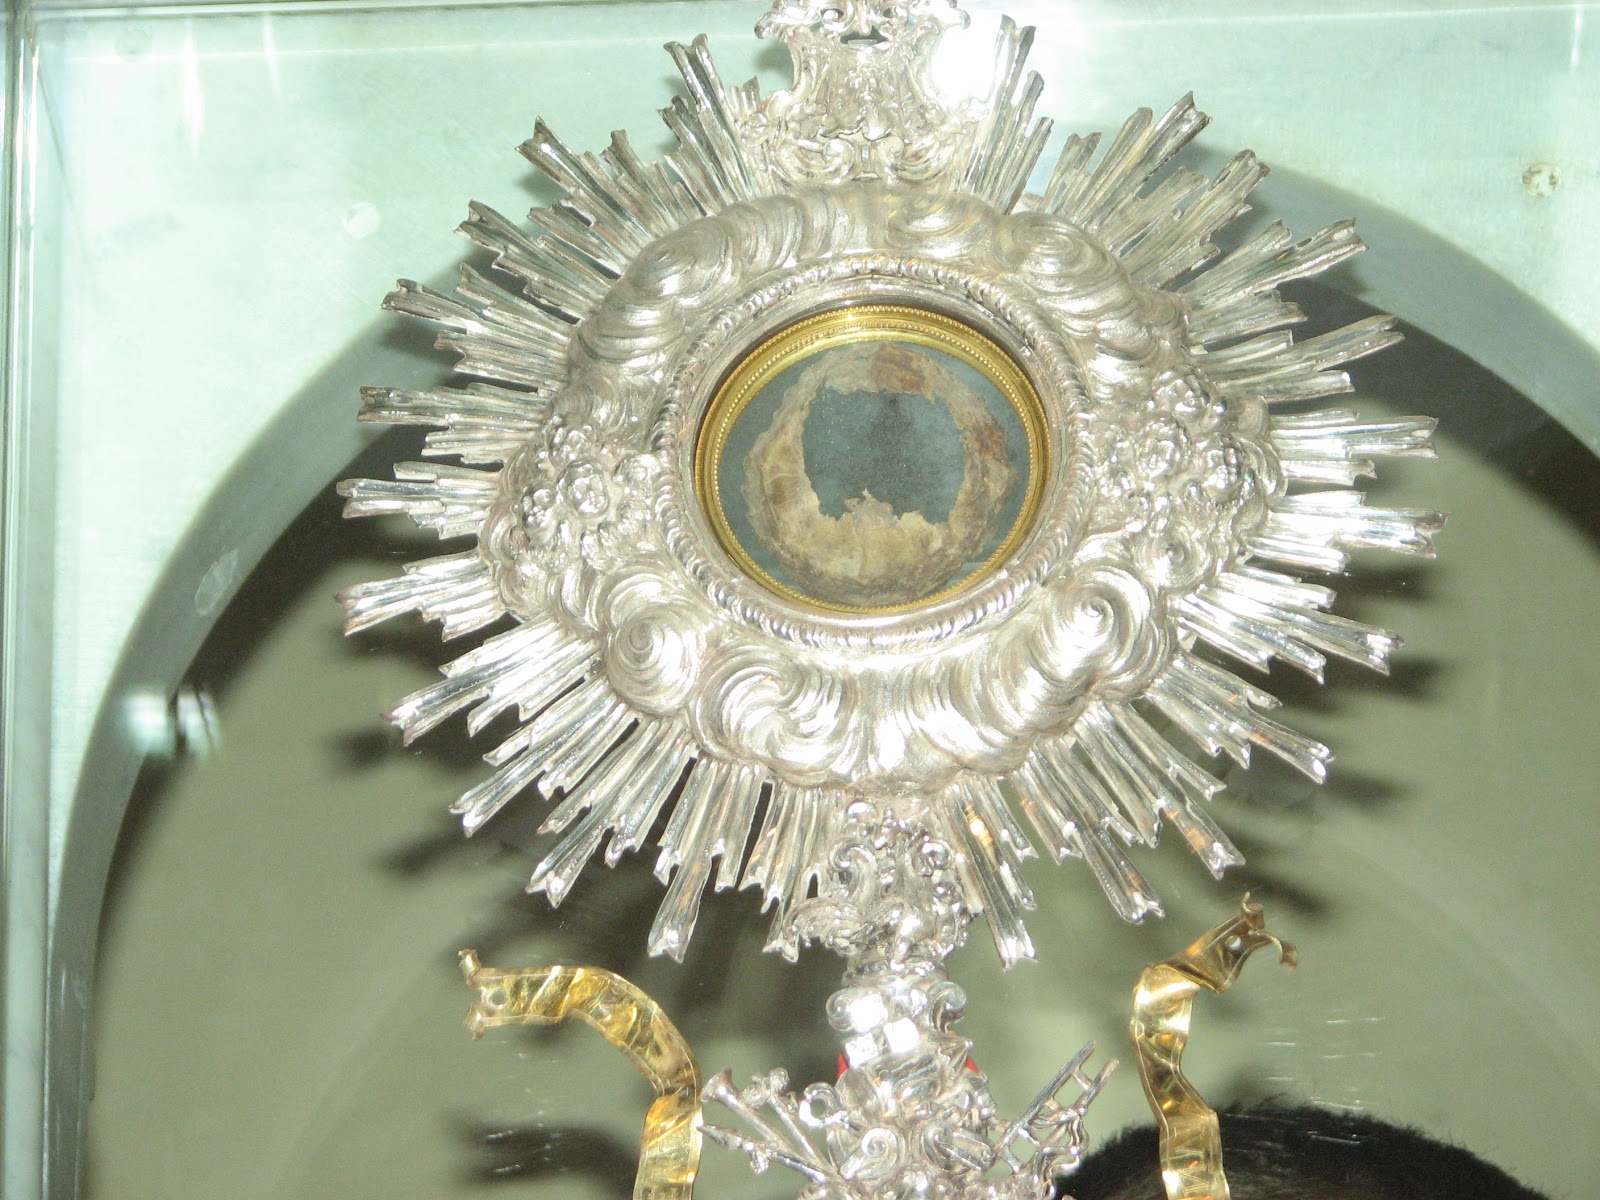 Infallible Catholic: Eucharistic Miracle of Lanciano, Italy